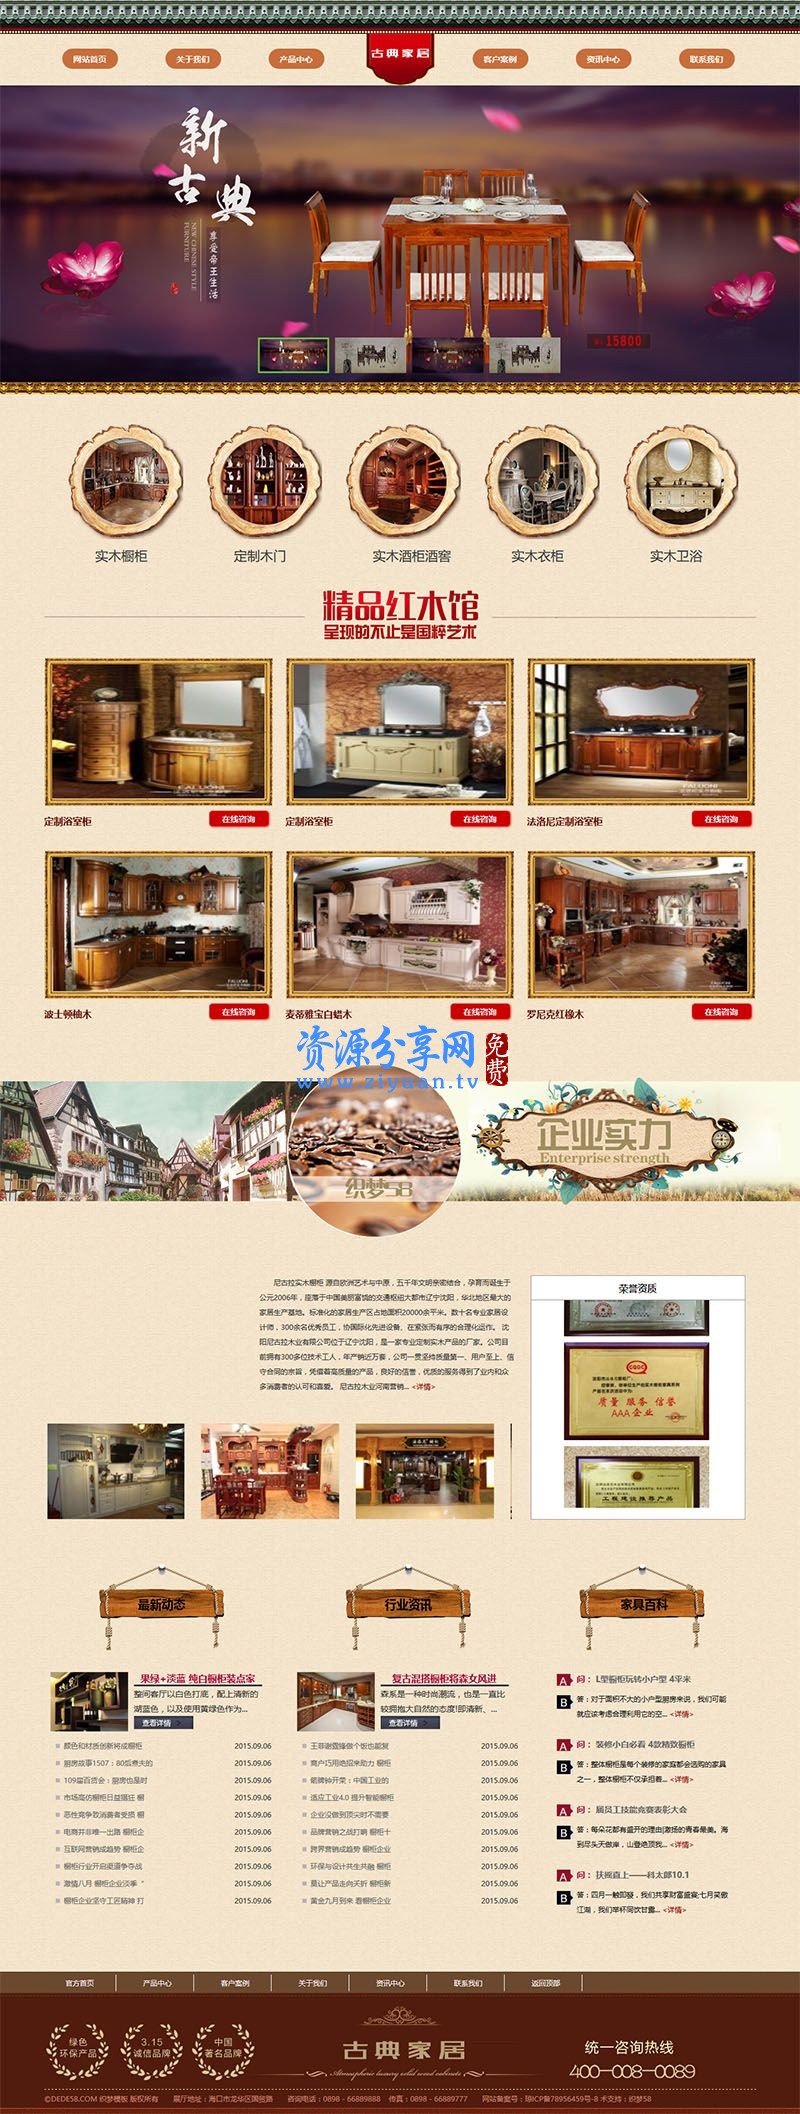 织梦 dedecms 简洁家居家具厨房橱柜用品企业网站模板